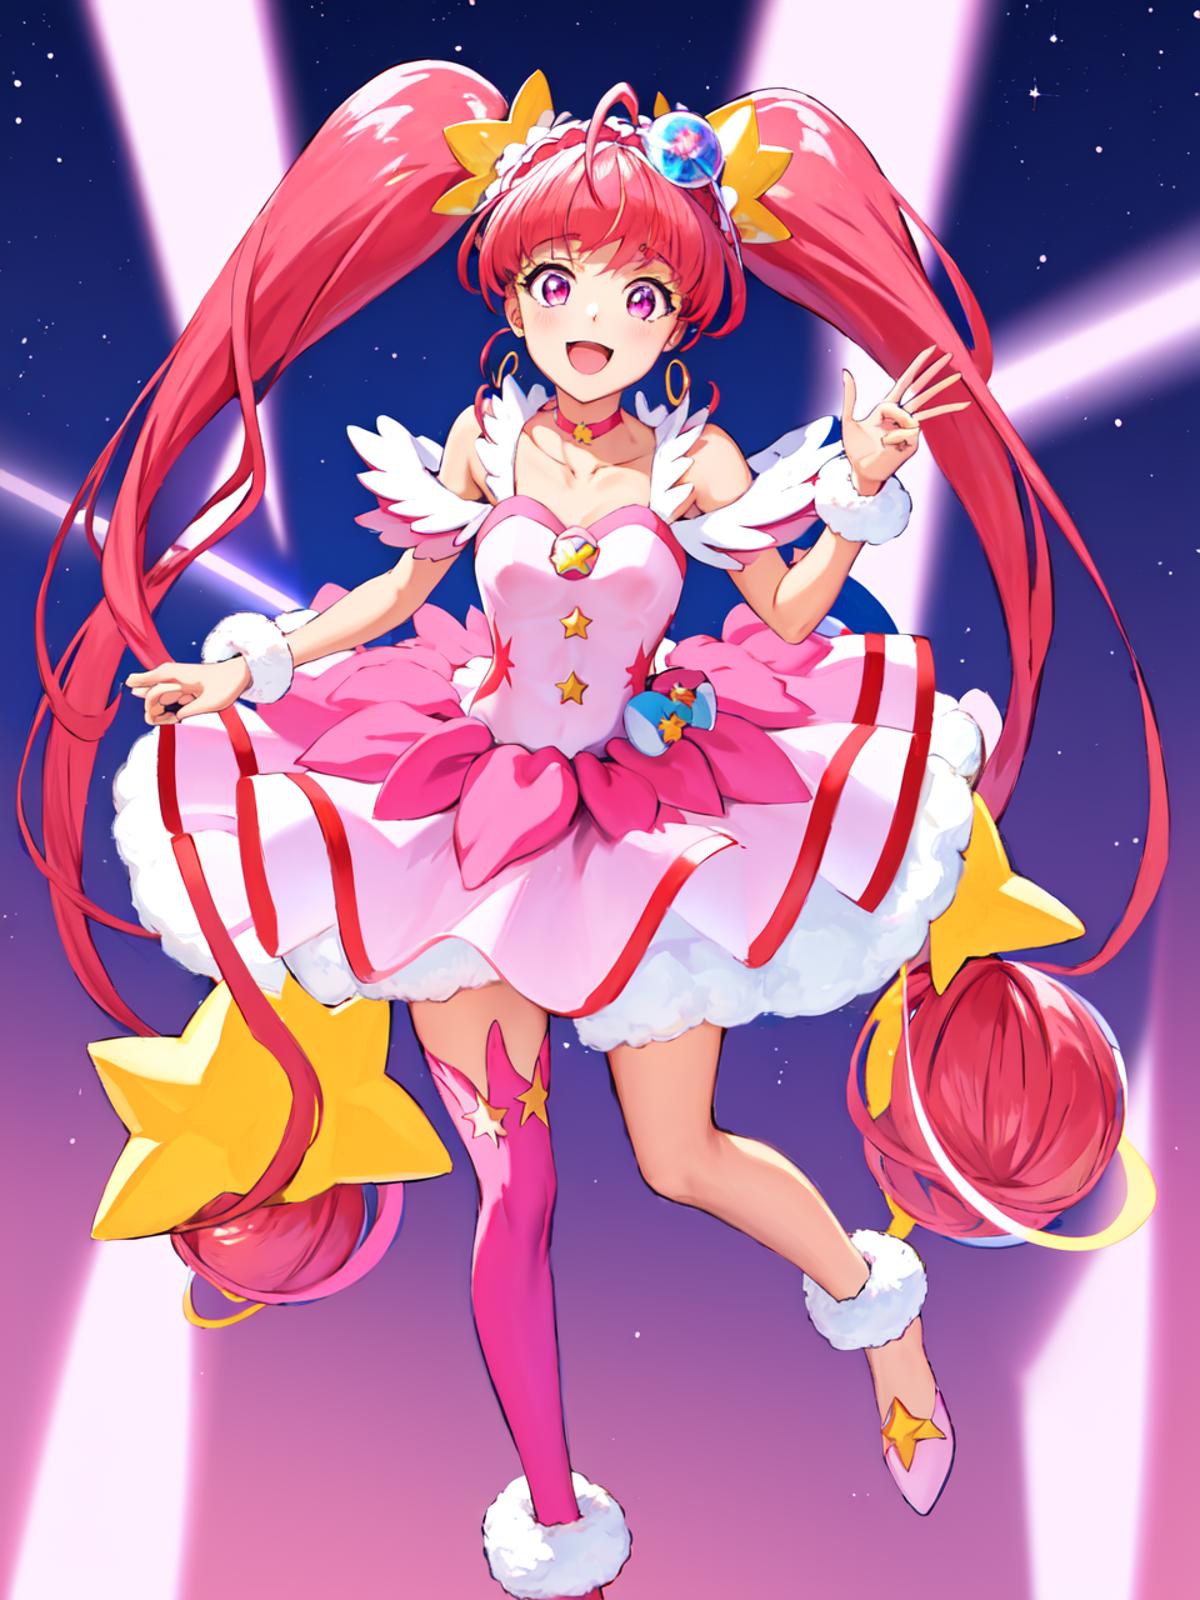 Cure Star (Star☆Twinkle Pretty Cure) スター☆トゥインクルプリキュア キュアスター image by secretmoon